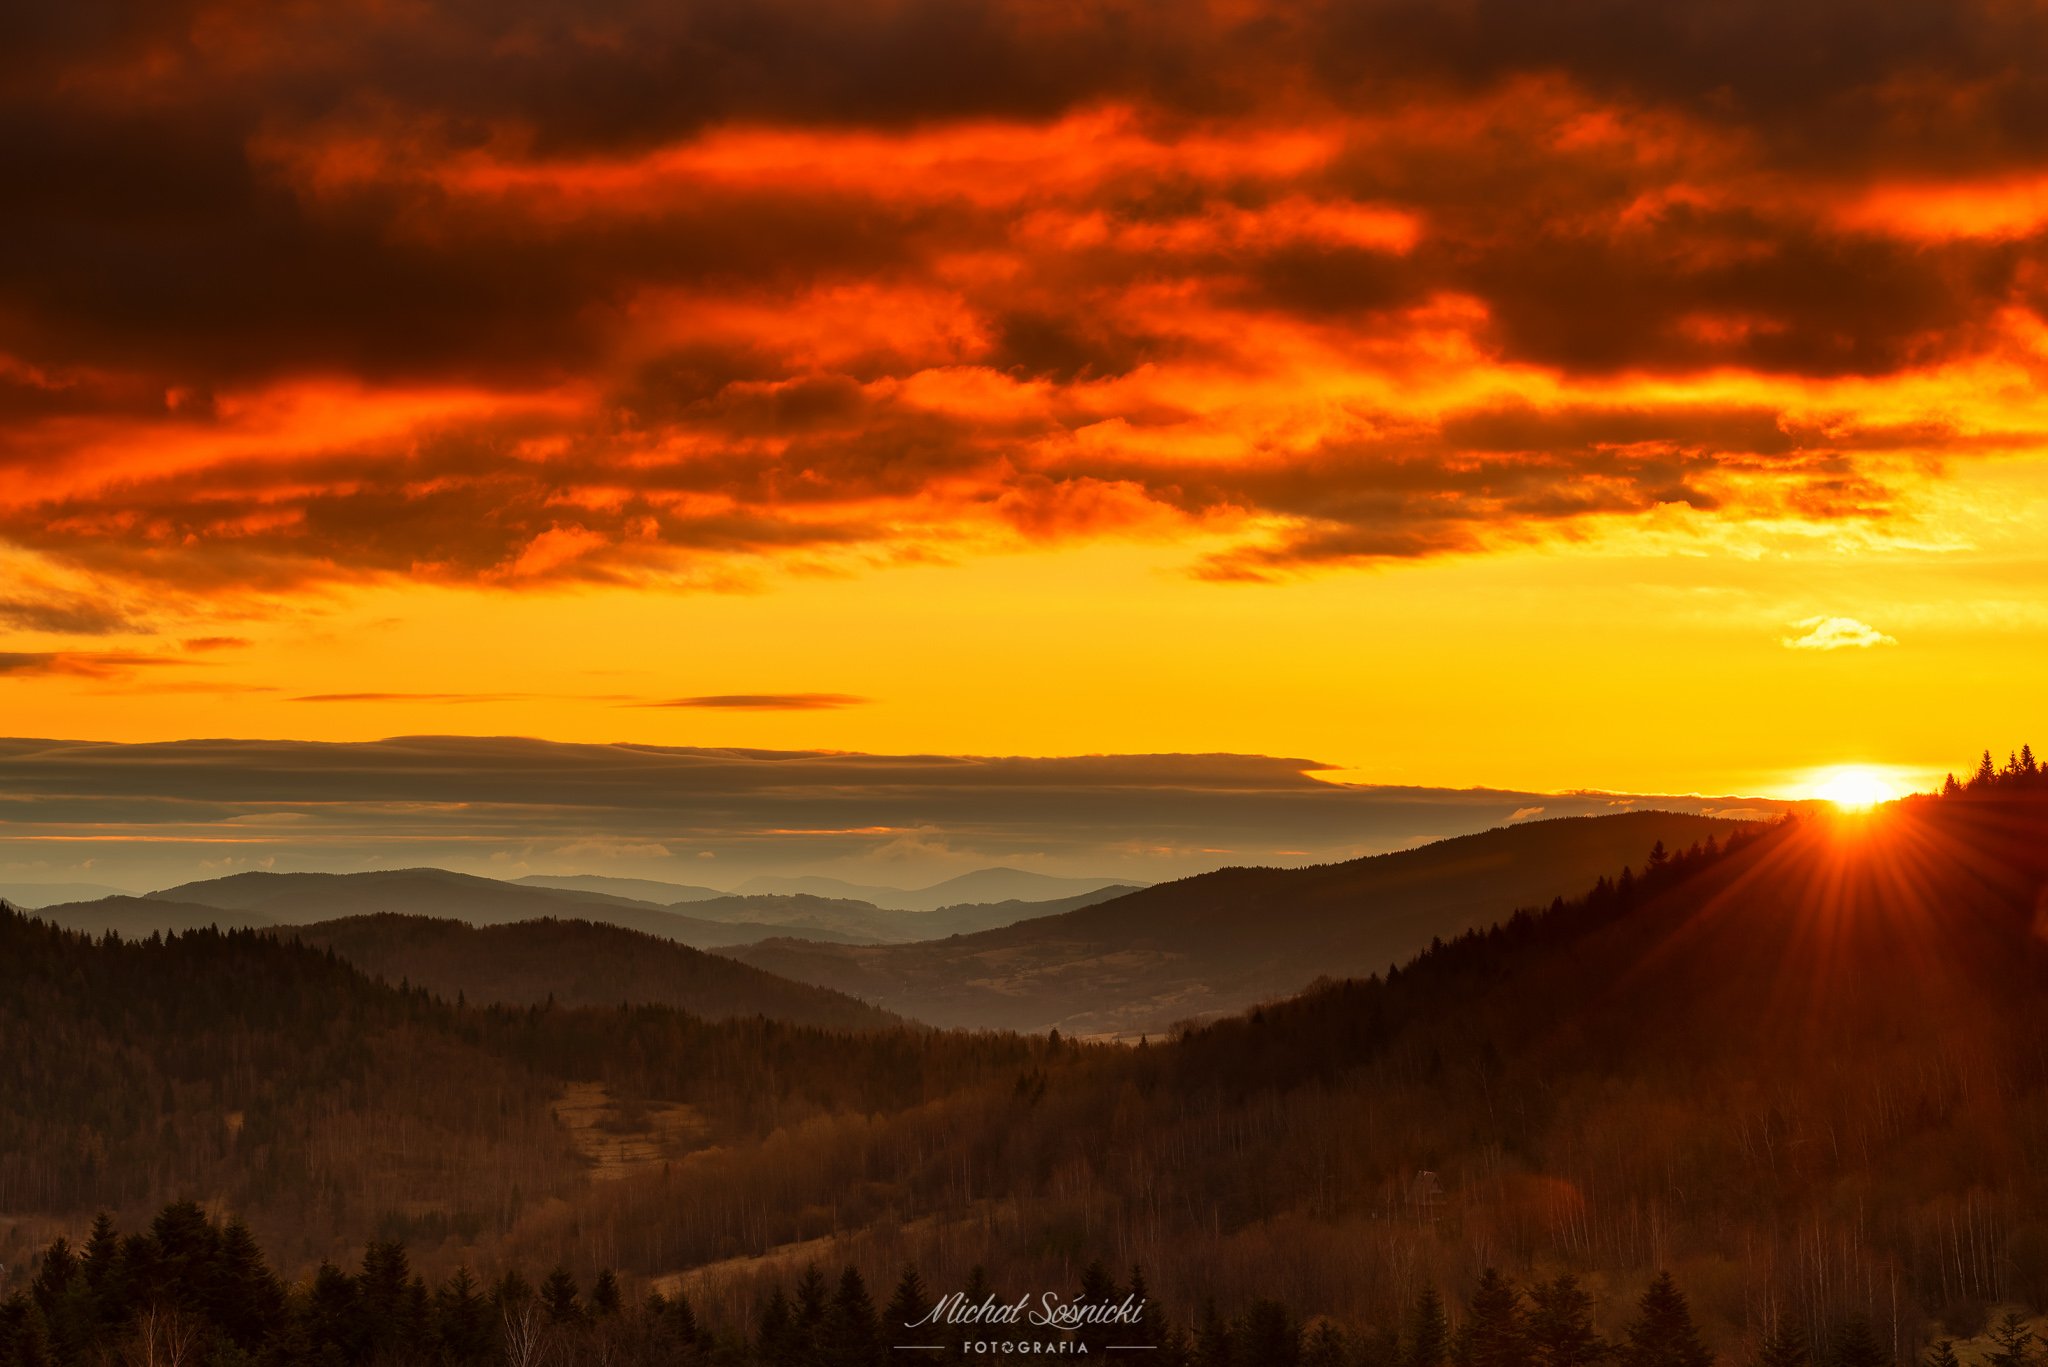 #sunrise #zawoja #poland #landscapes #colors #pentax #beatiful #amazing #nature, Michał Sośnicki